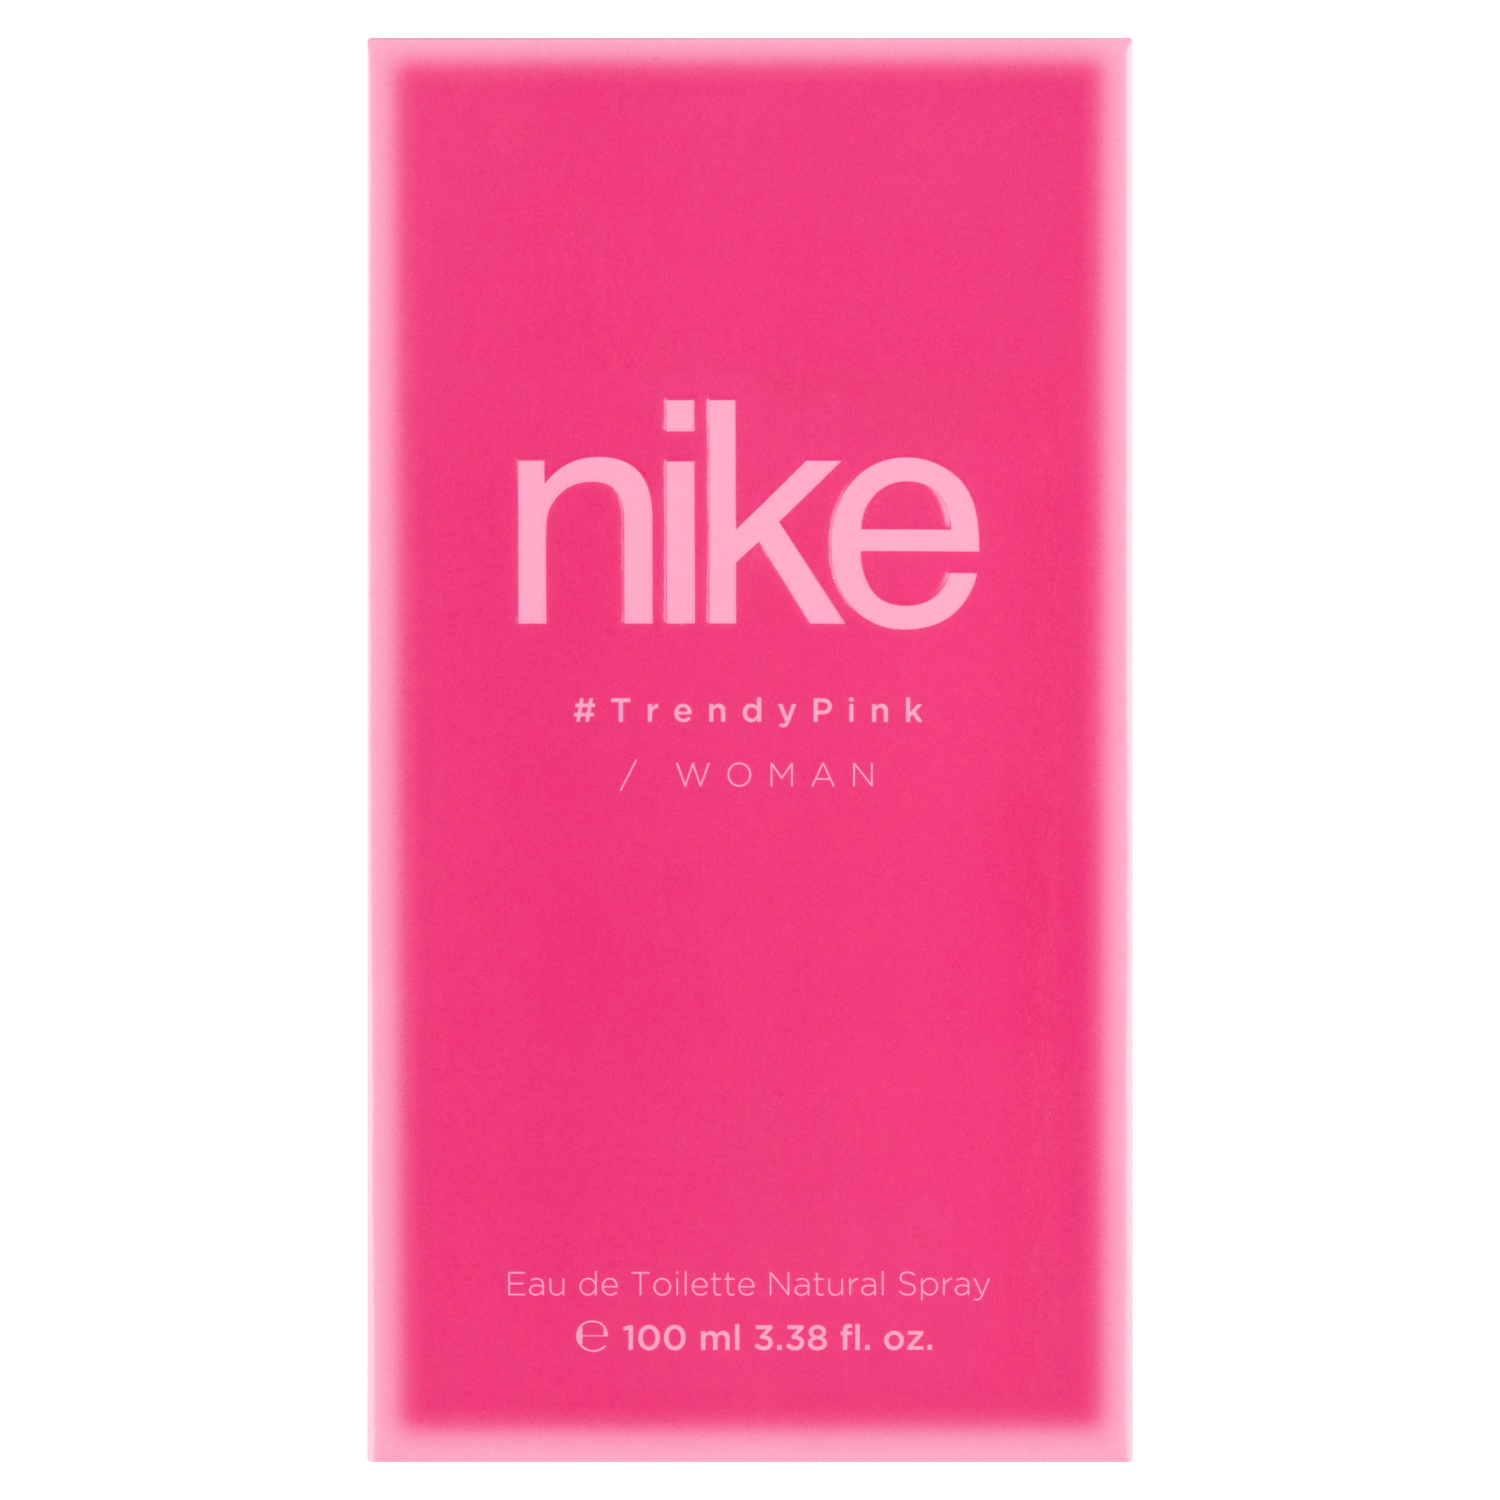 Натуральная женская туалетная вода Nike Trendy Pink, 100 мл woman туалетная вода 100мл